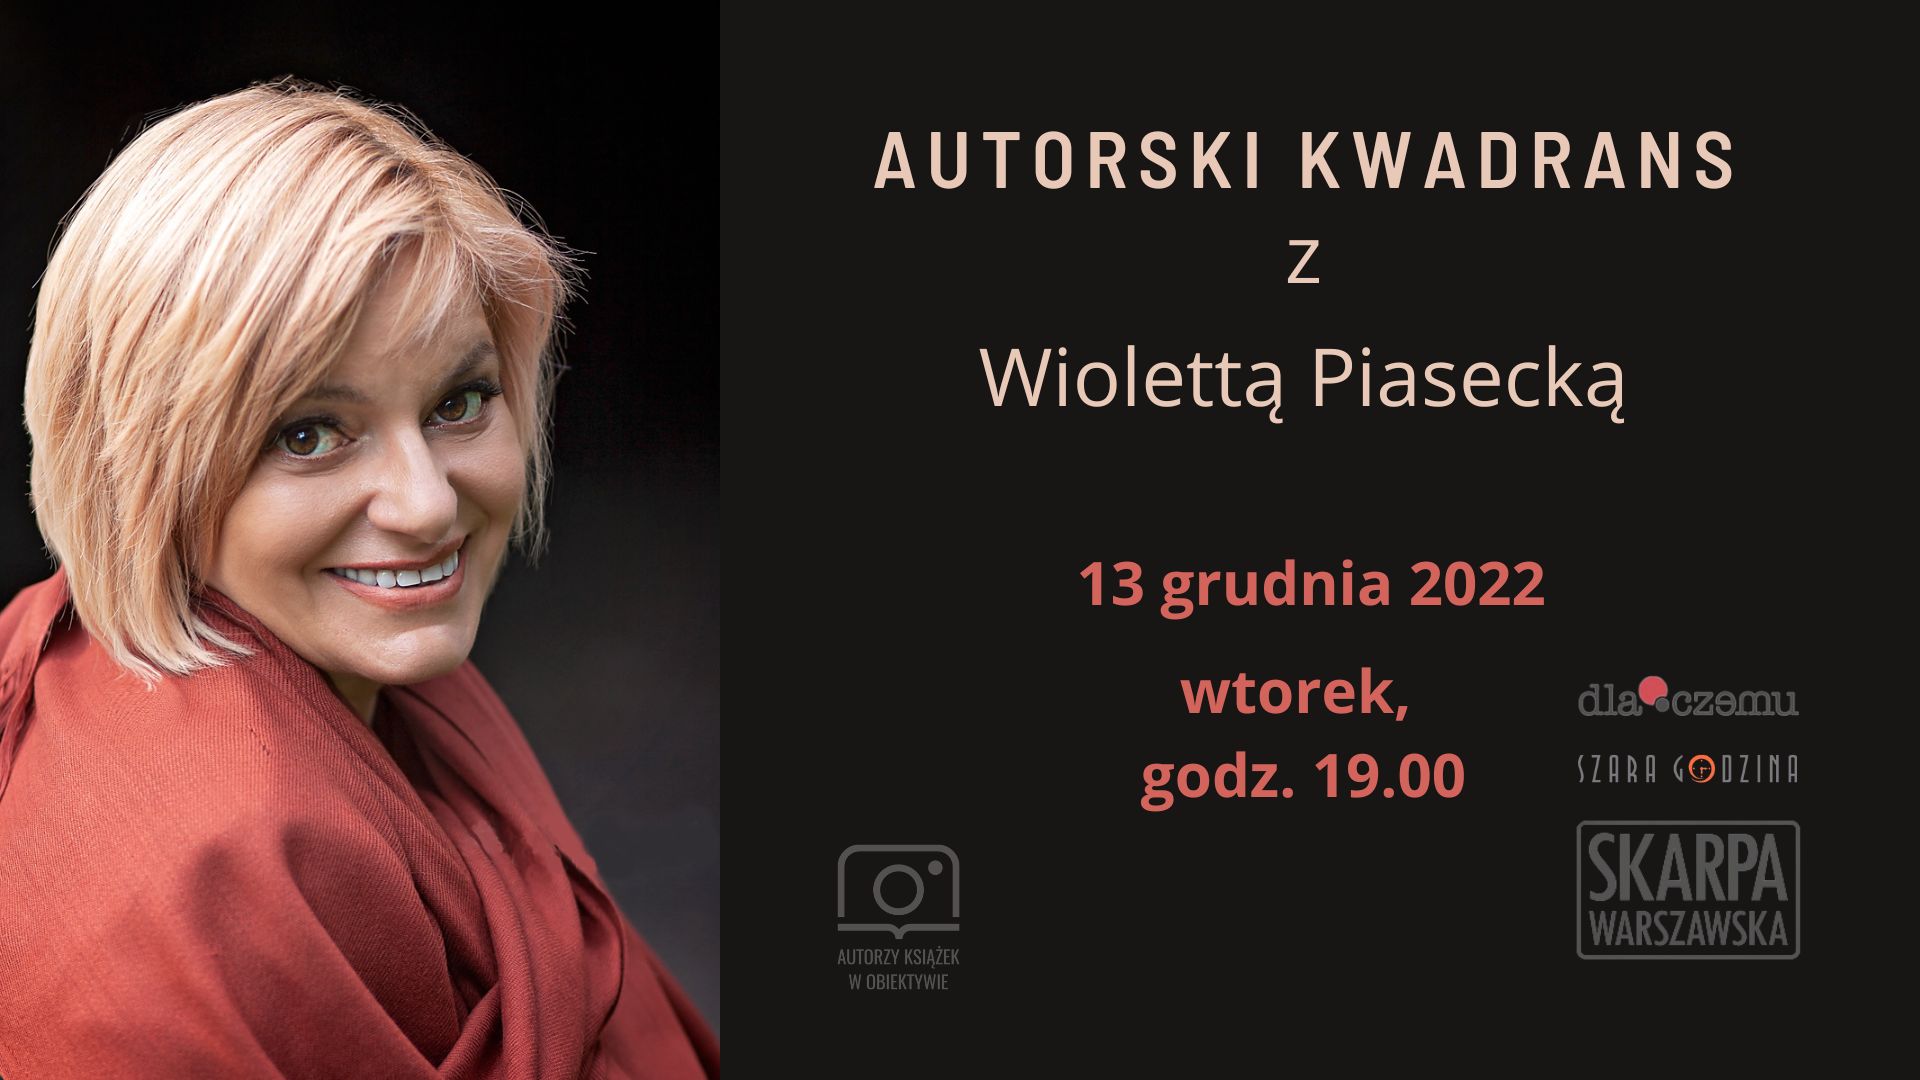 Autorski kwadrans  z Wioletta Piasecką  - rozmawia Dorota Duda